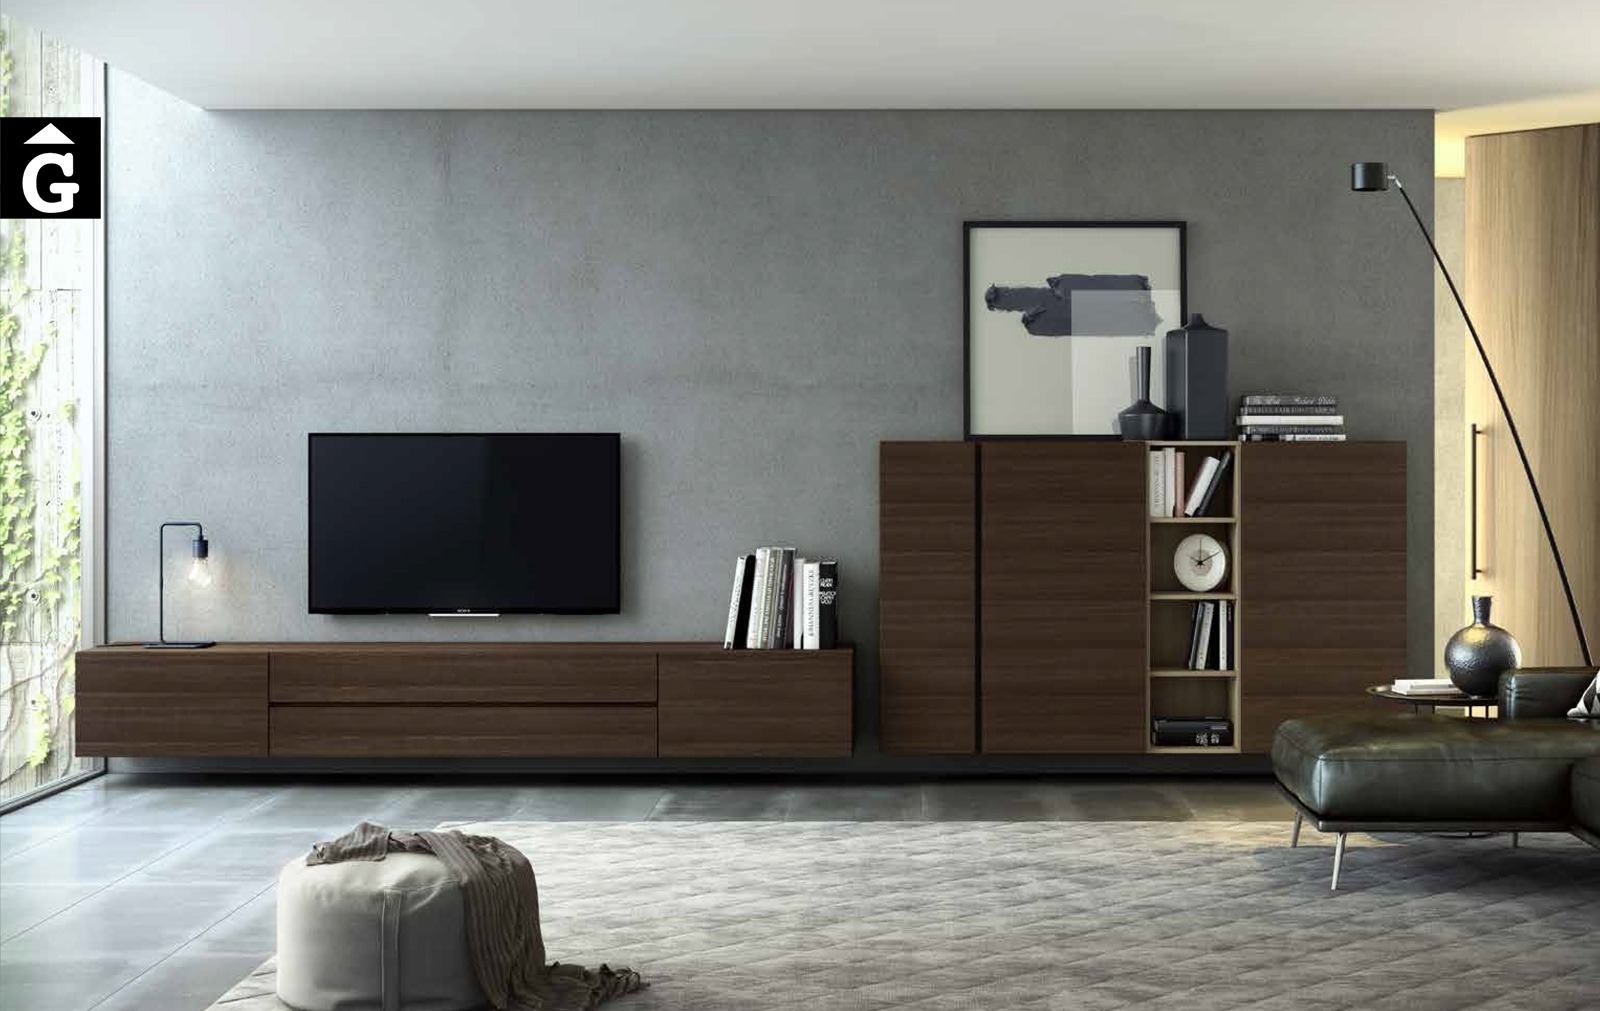 15 0 Area mobles Ciurans per mobles Gifreu programa modular disseny atemporal realitzat amb materials i ferratges de qualitat estil modern minimal